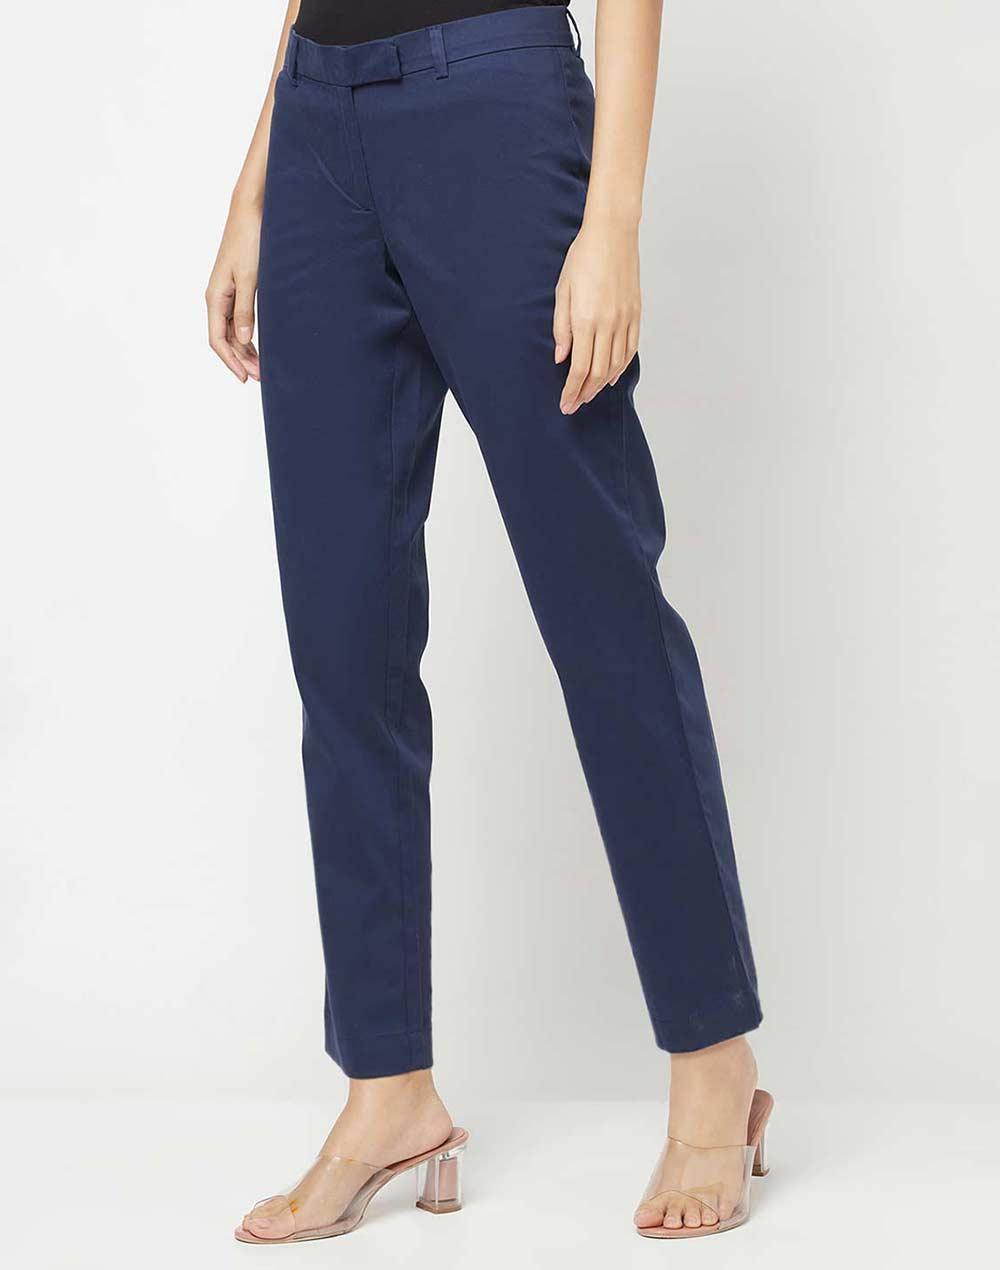 fabnu blue cotton blend slim fit casual pant